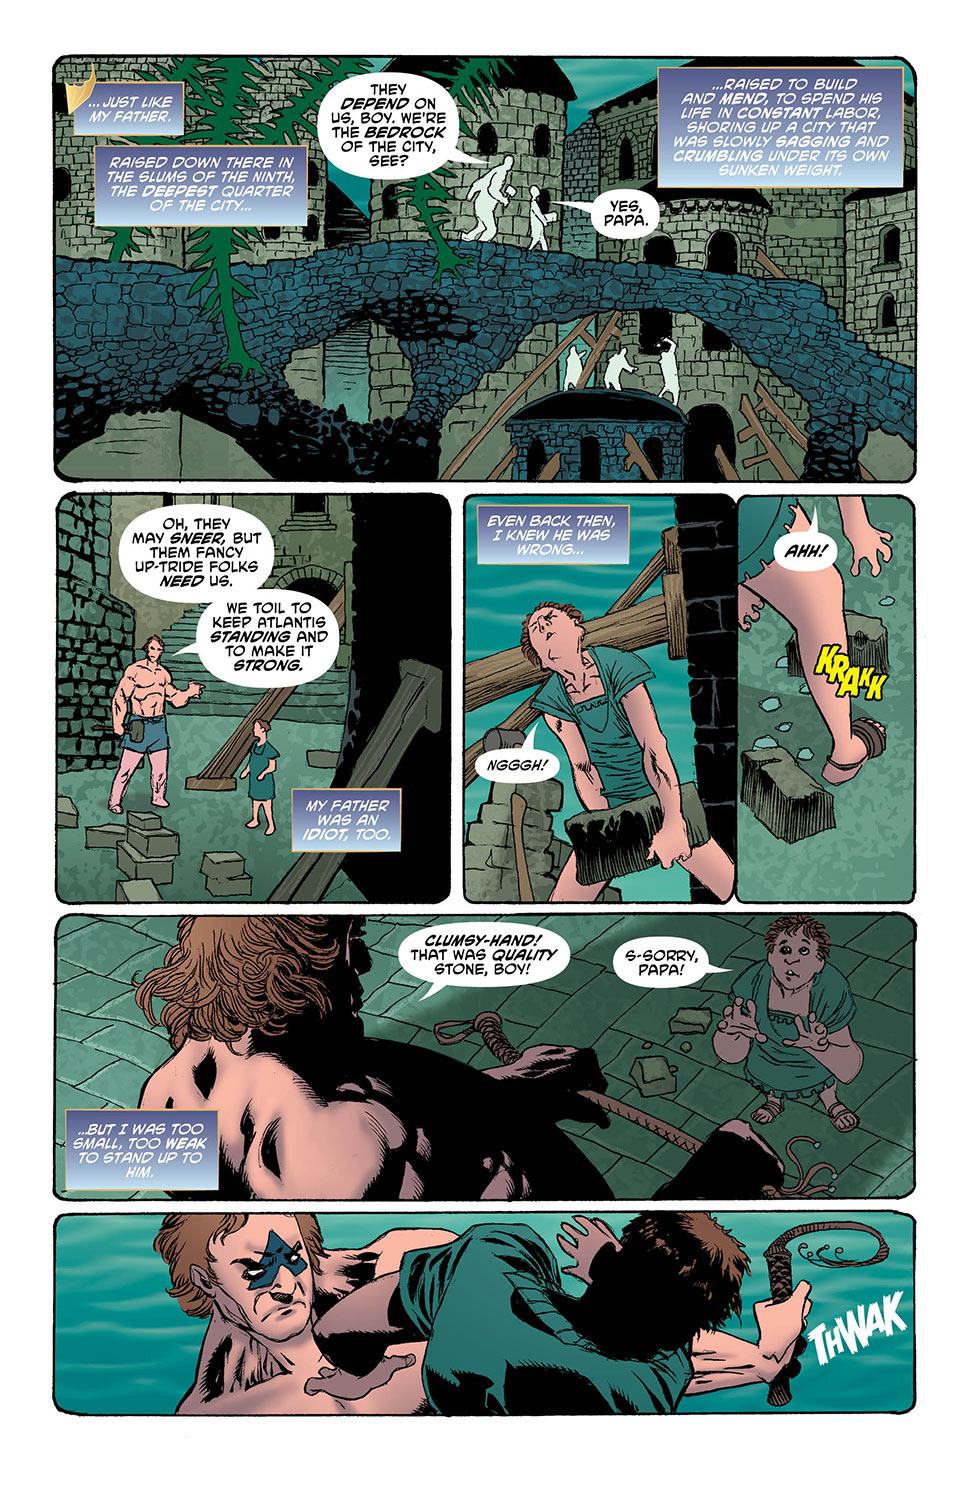 Aquaman 34-4 - DC Comics News